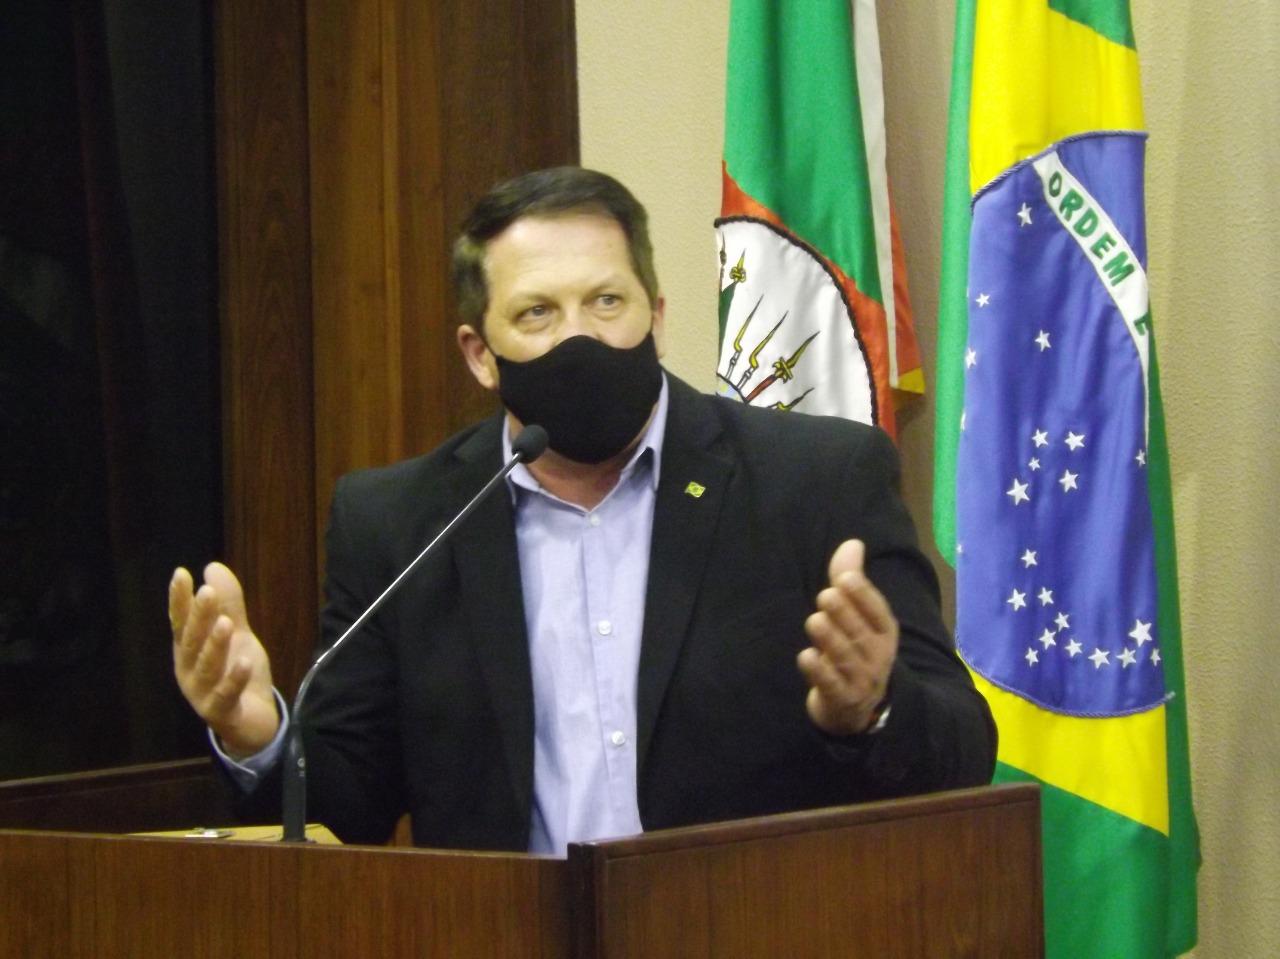 Fantinel repudia ação da UCS na visita de Bolsonaro a Caxias